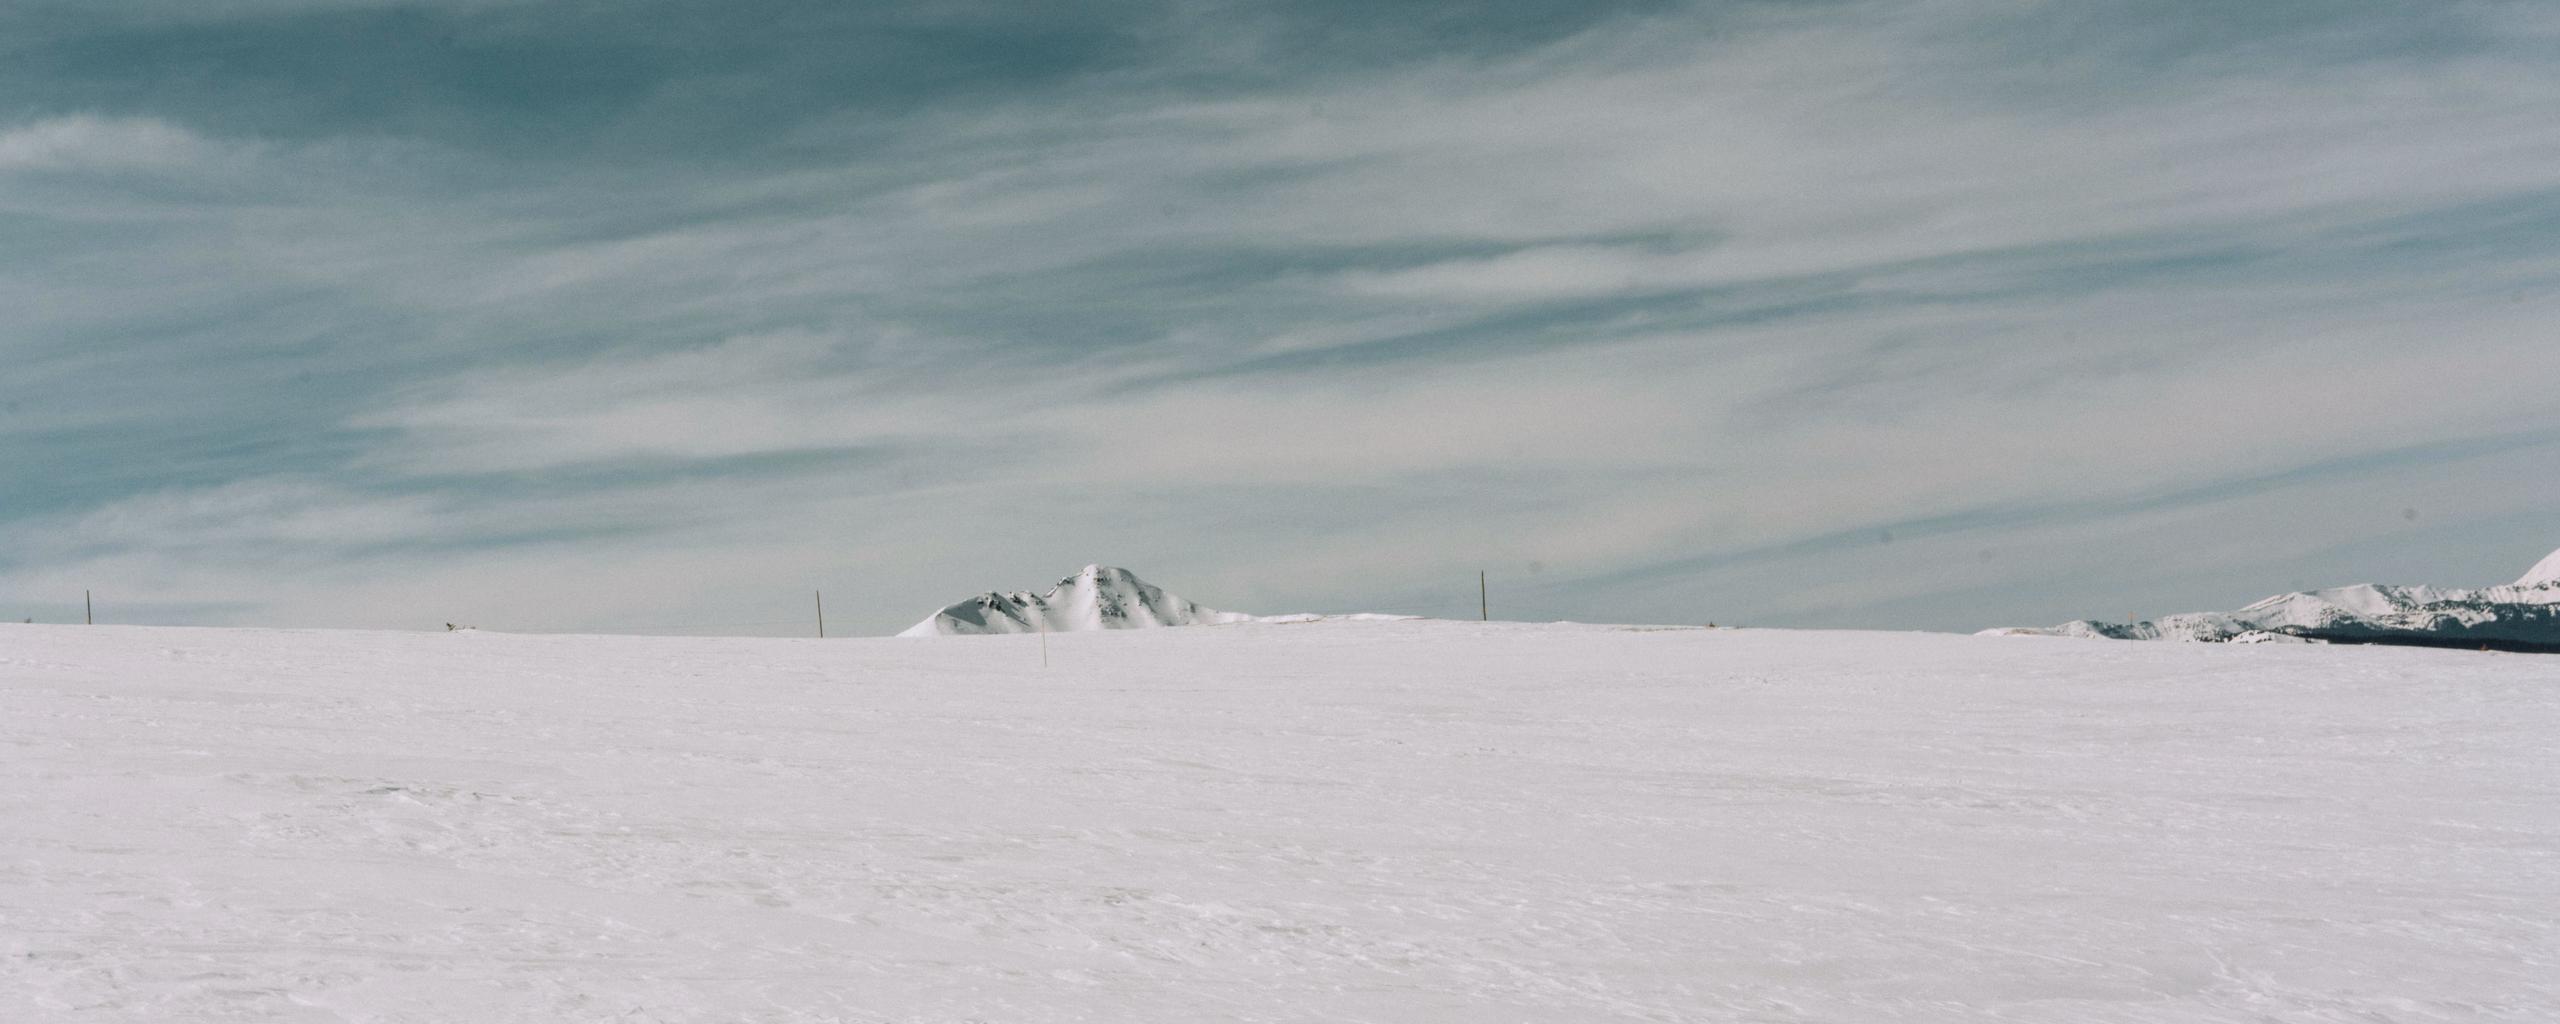 Minimal snowy landscape in Aspen